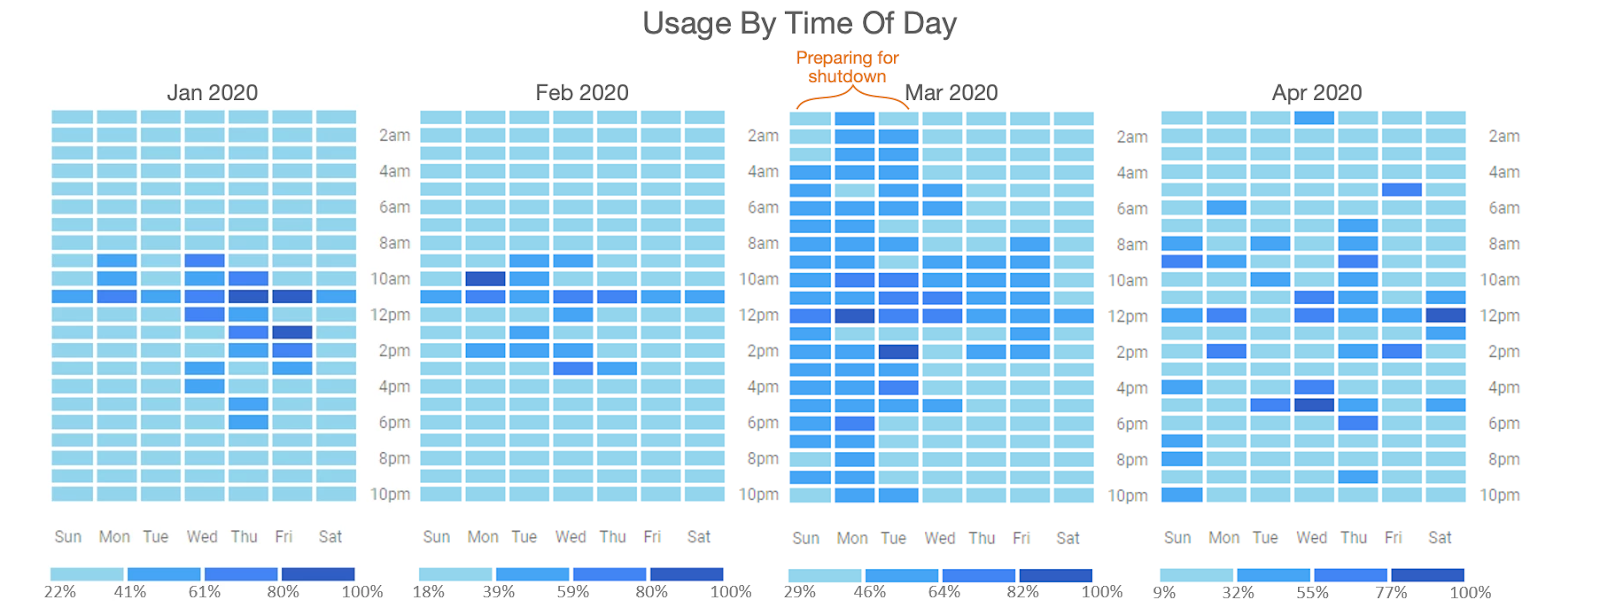 plot of usage of EM platform